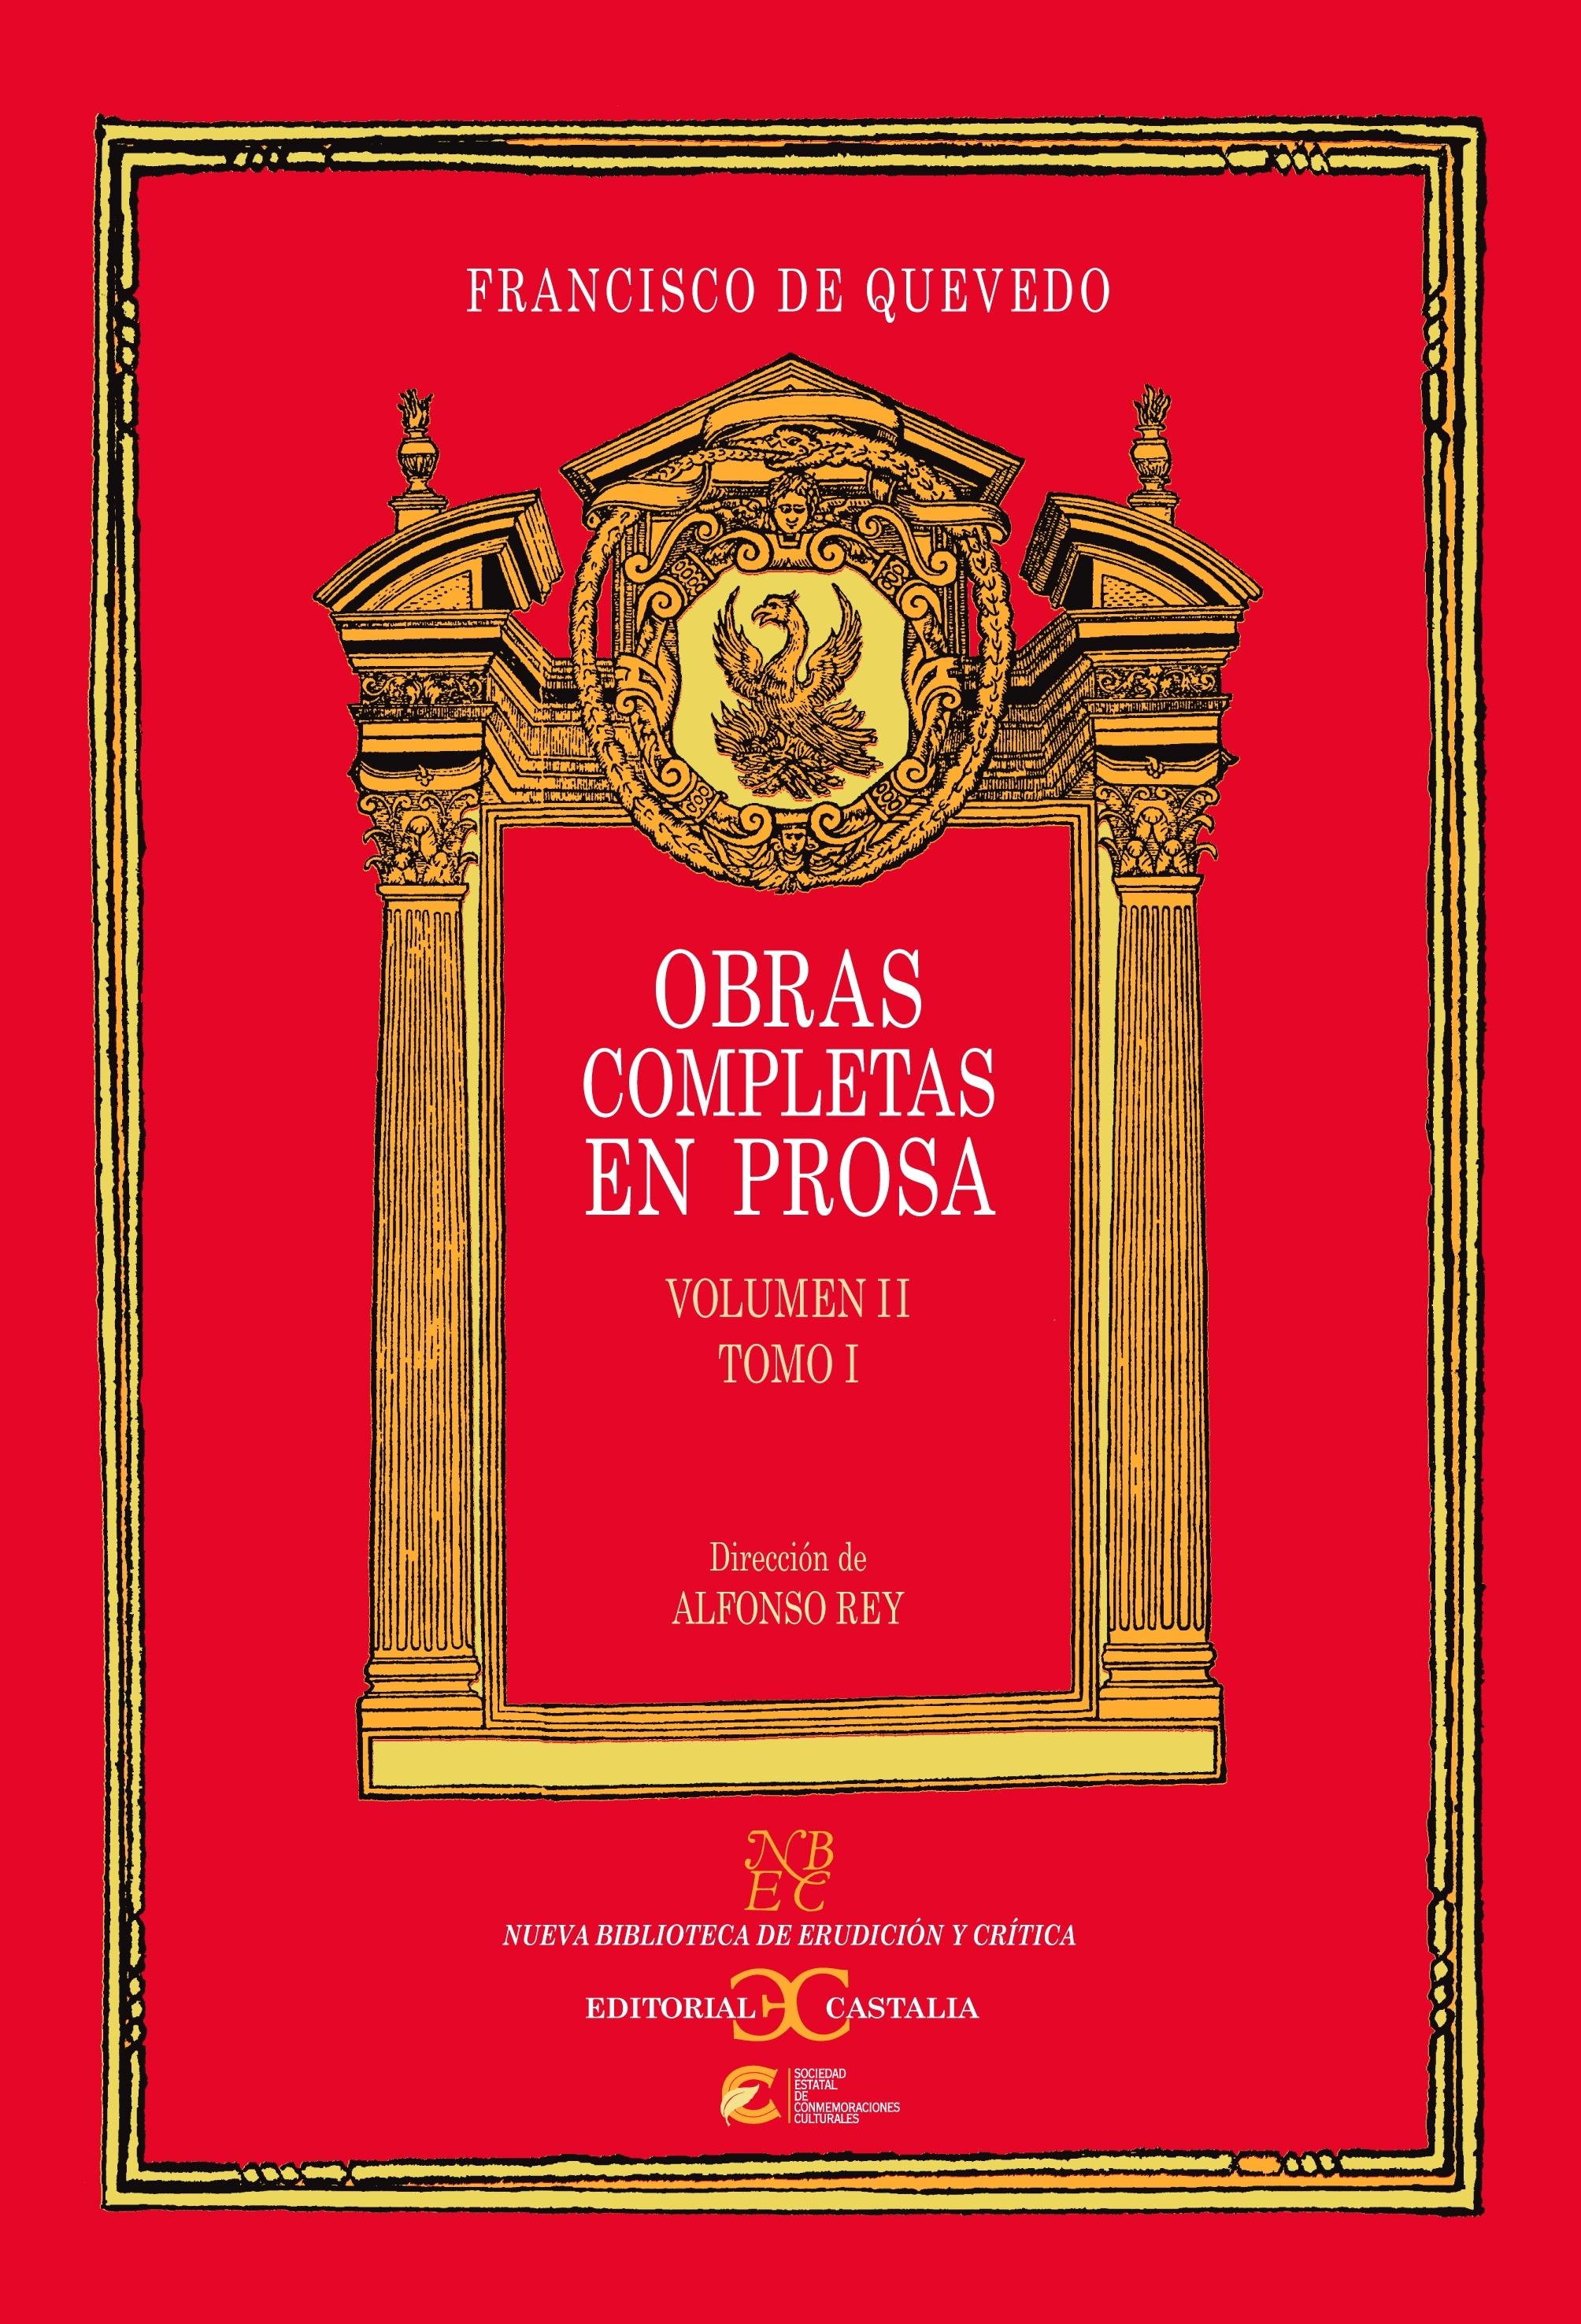 Obras completas en prosa - Volumen 2 - Tomo 1 "(Francisco de Quevedo)"